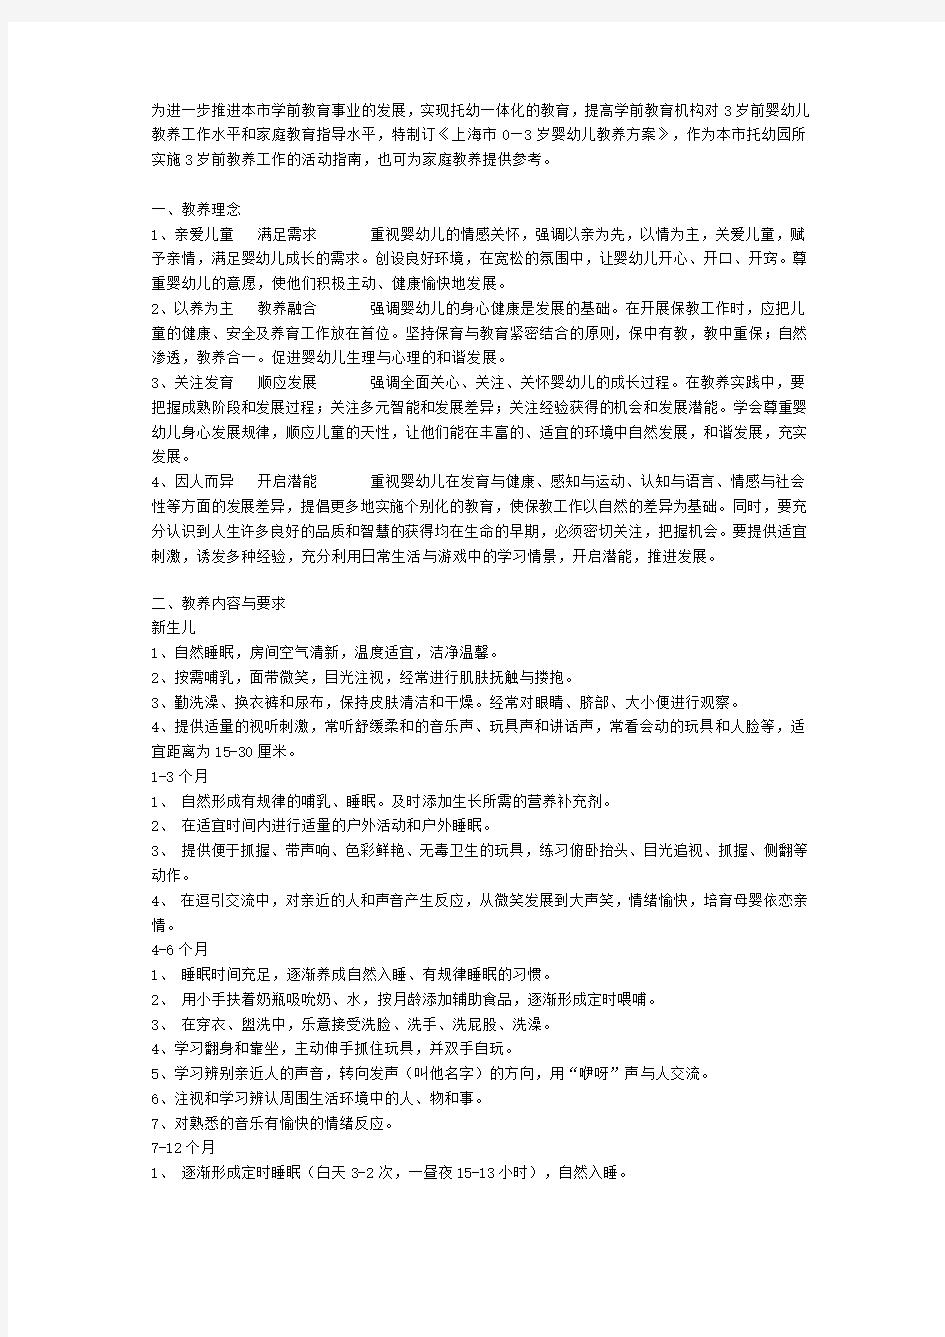 上海市0—3岁婴幼儿教养方案(试行)